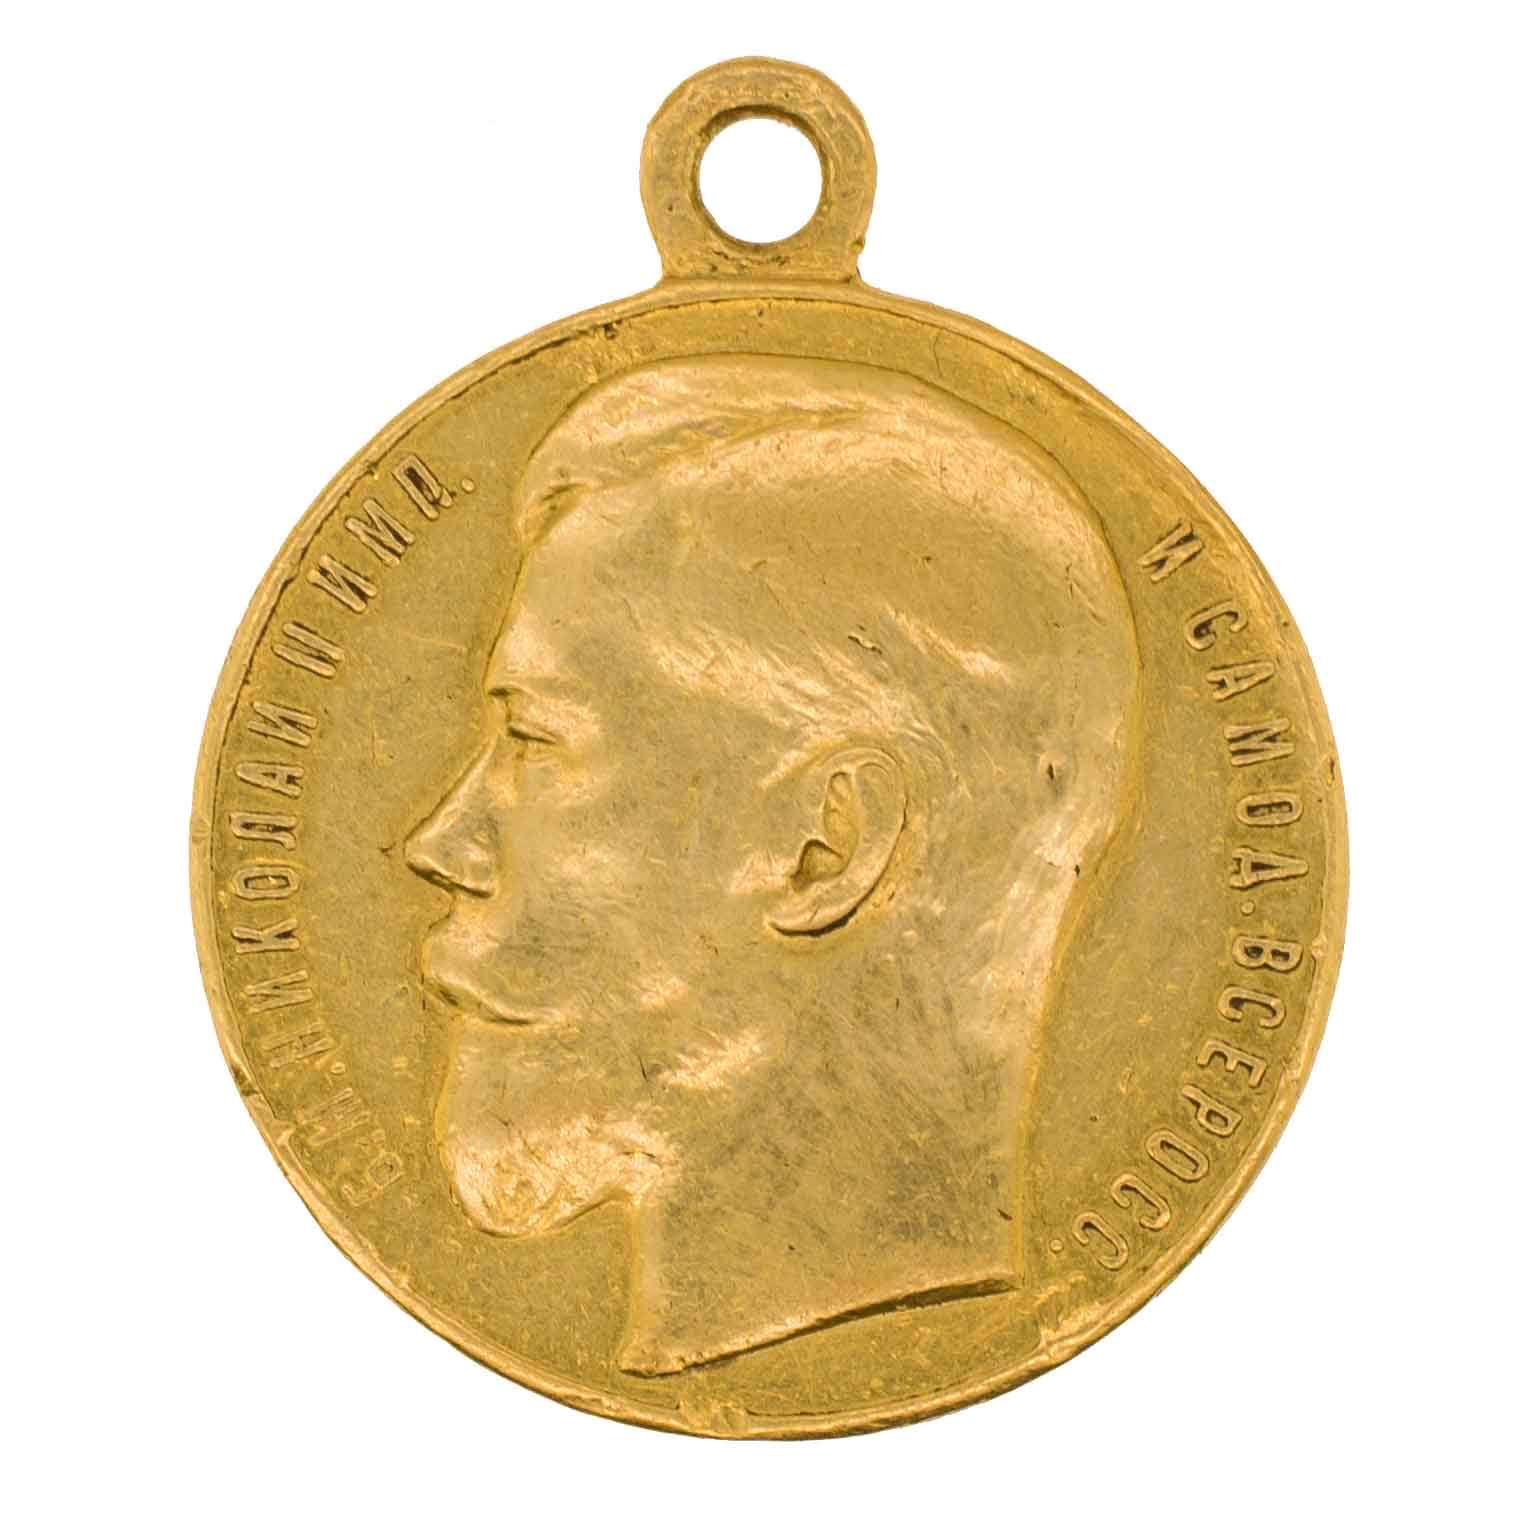 Георгиевская Медаль ("За Храбрость") 2 ст № 6.960. (10 - й понтонный батальон).